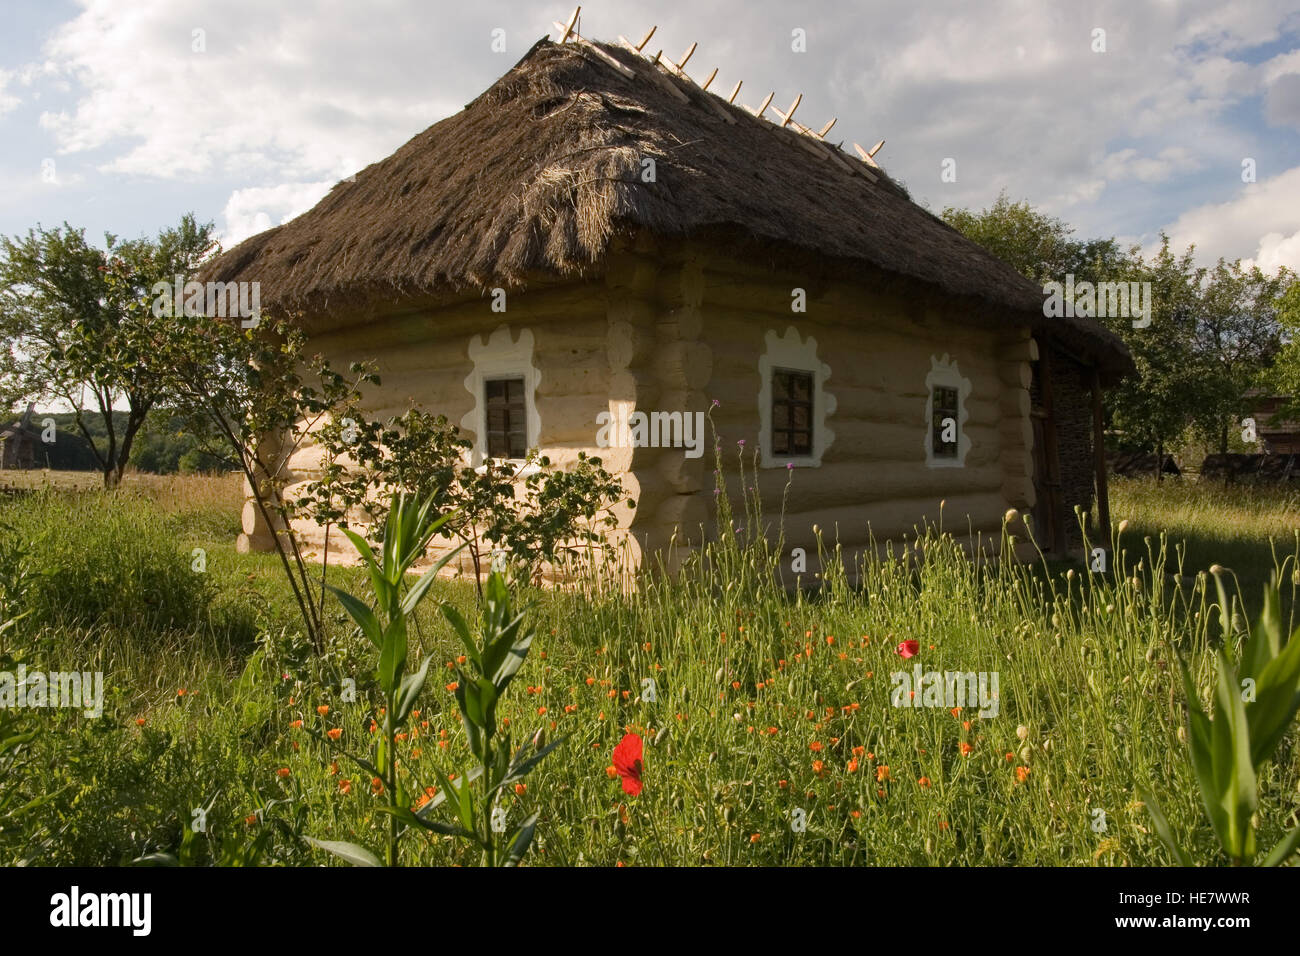 Maison de village ukrainien authentique.Un ukrainien typique maison ancienne, dans Pirogovo près de Kiev Banque D'Images